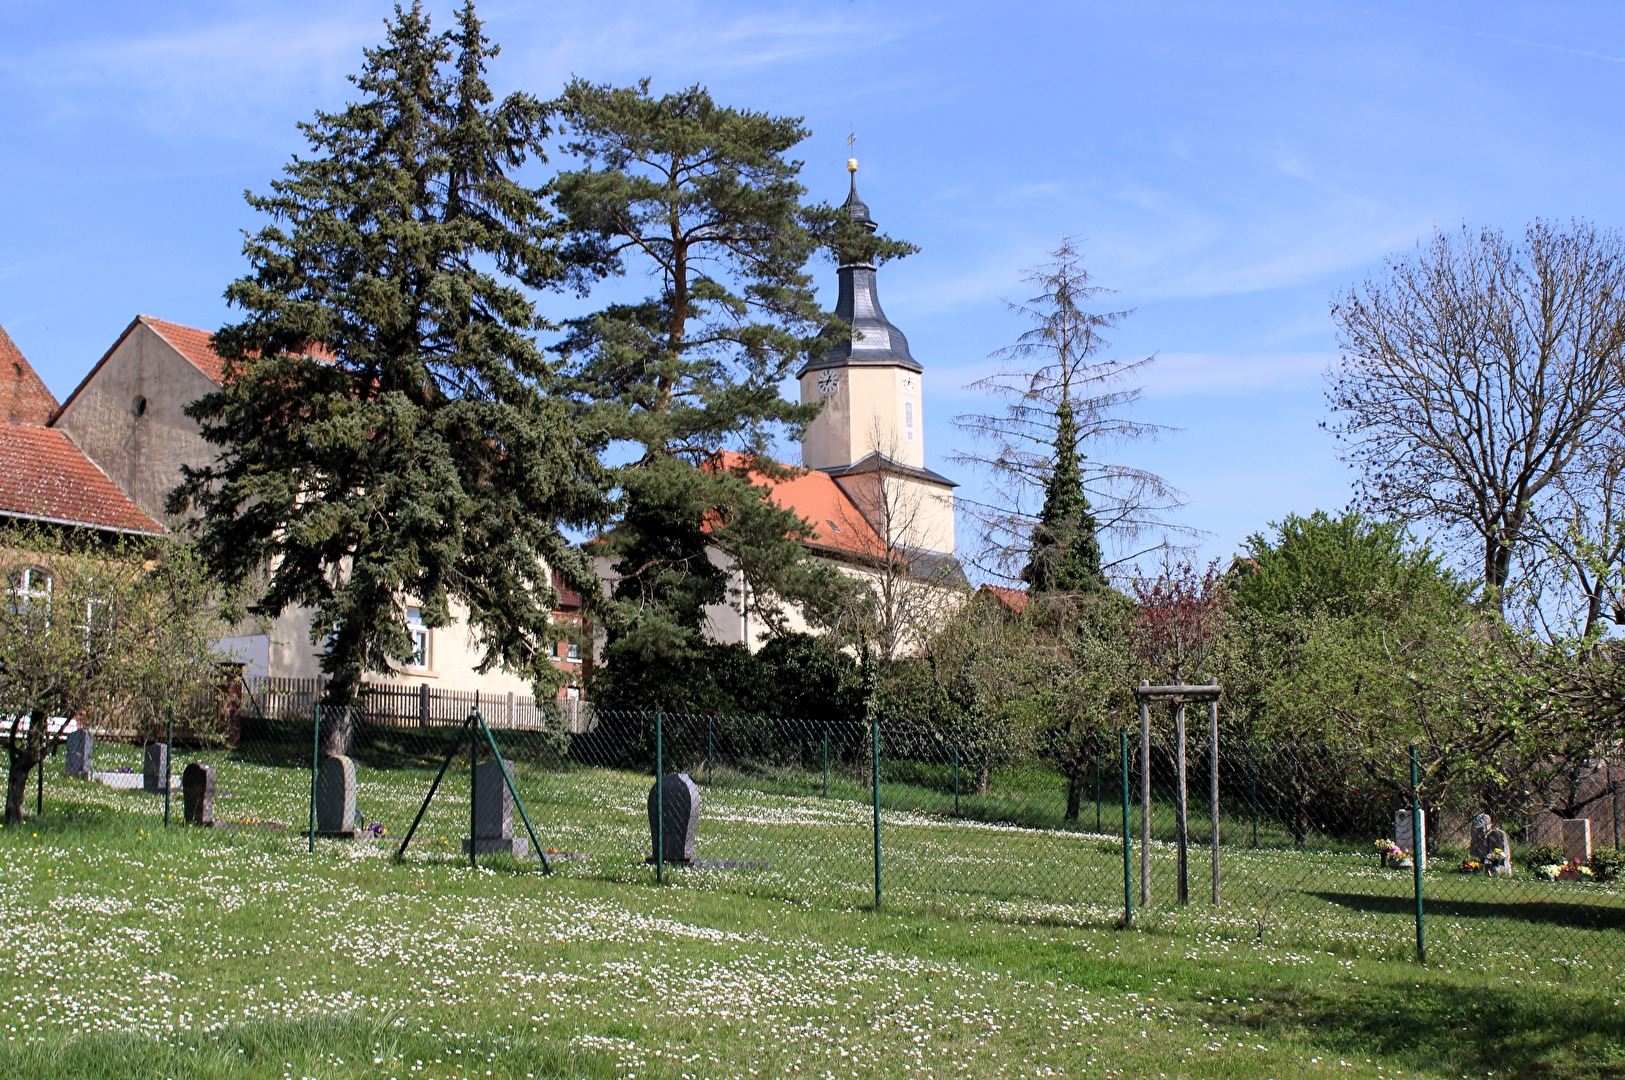 Friedhof und Dorfkirche in Tultewitz